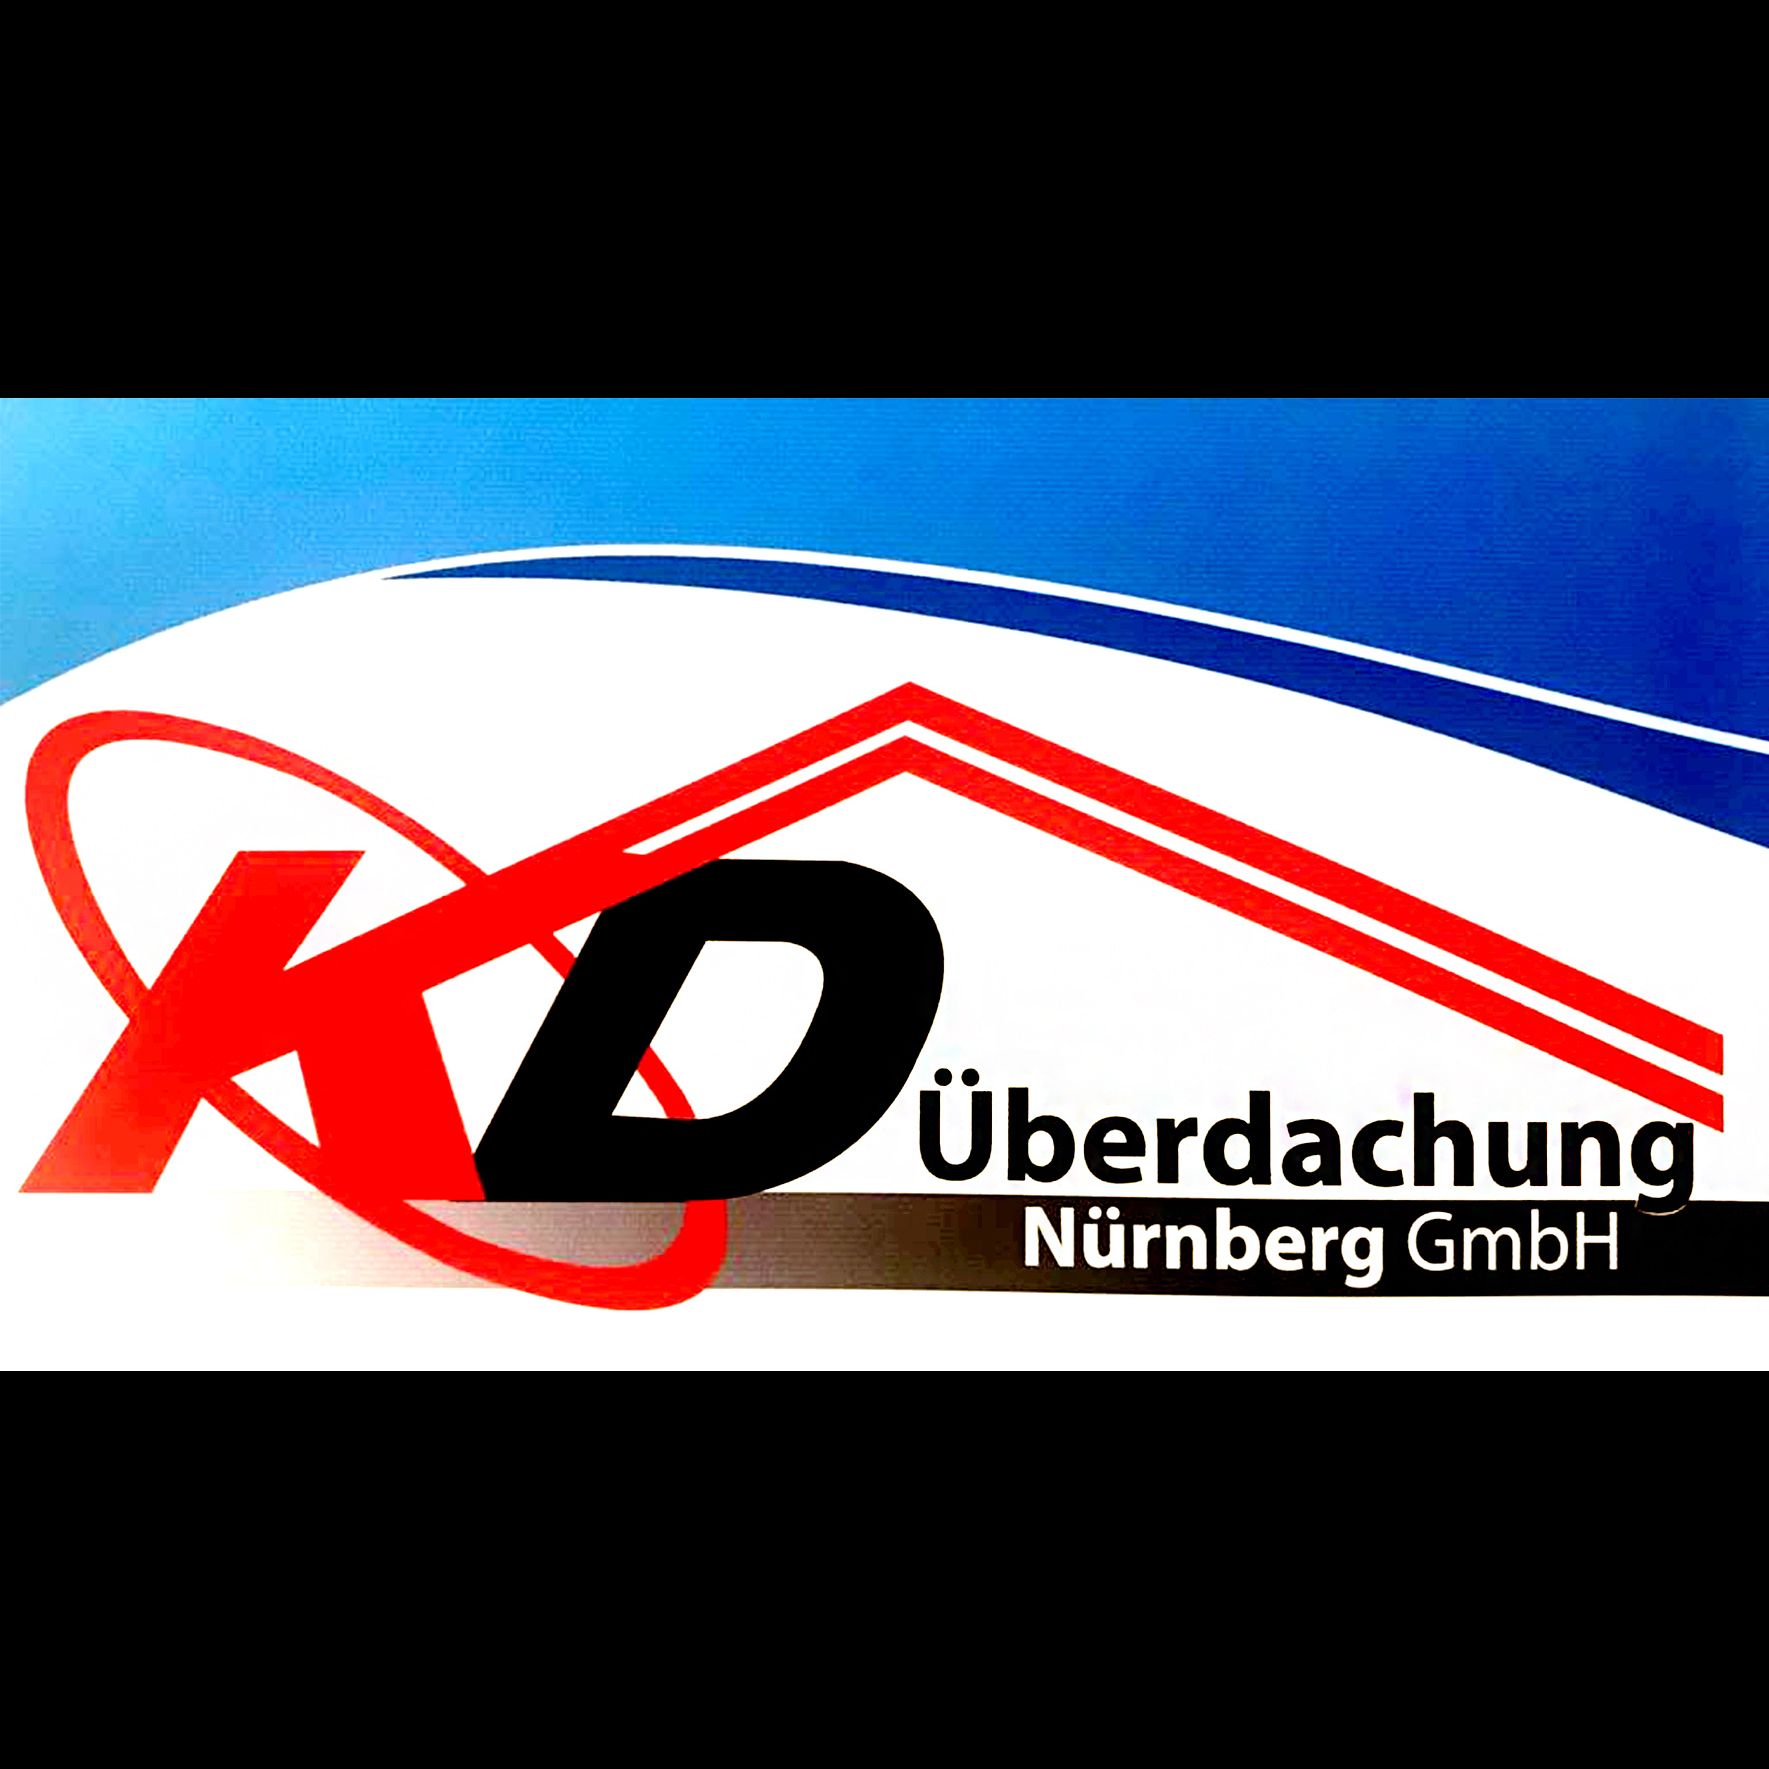 KD Überdachung Nürnberg GmbH